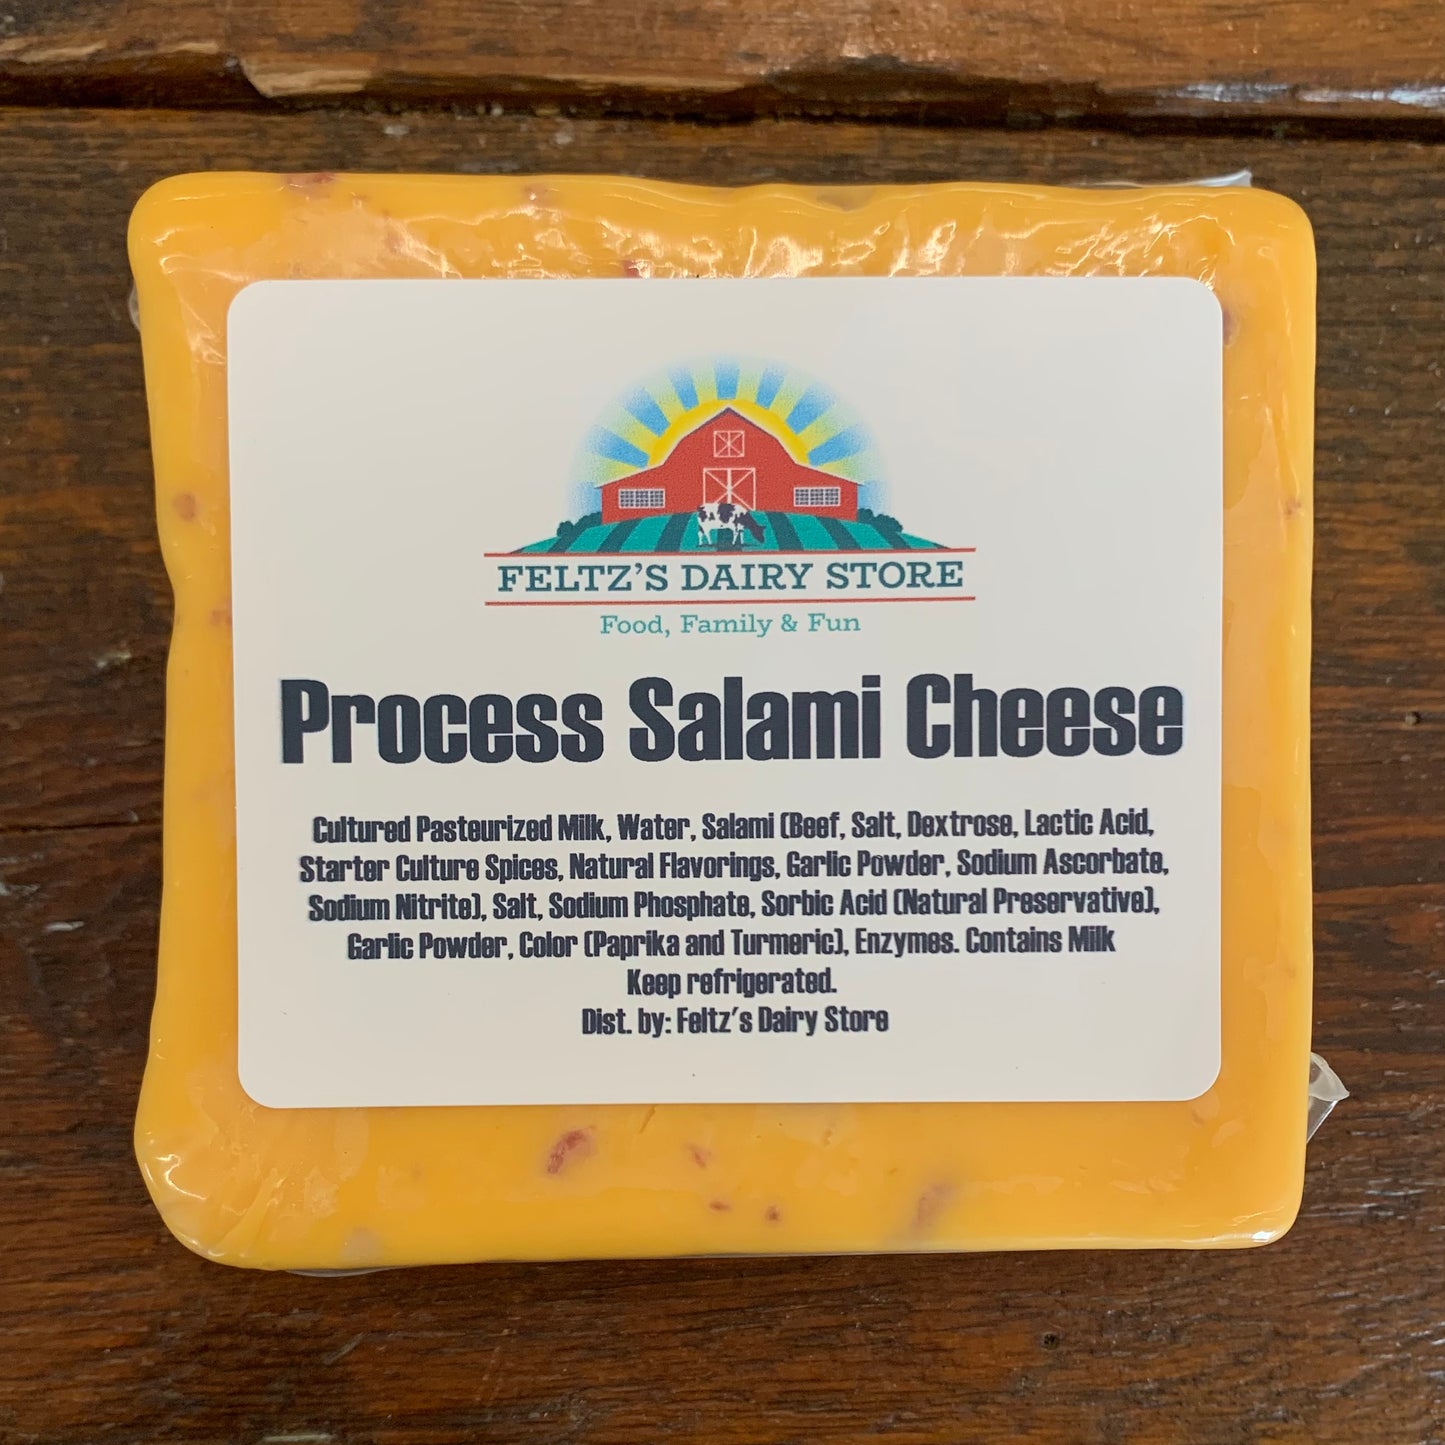 Feltz's Process Salami Cheese